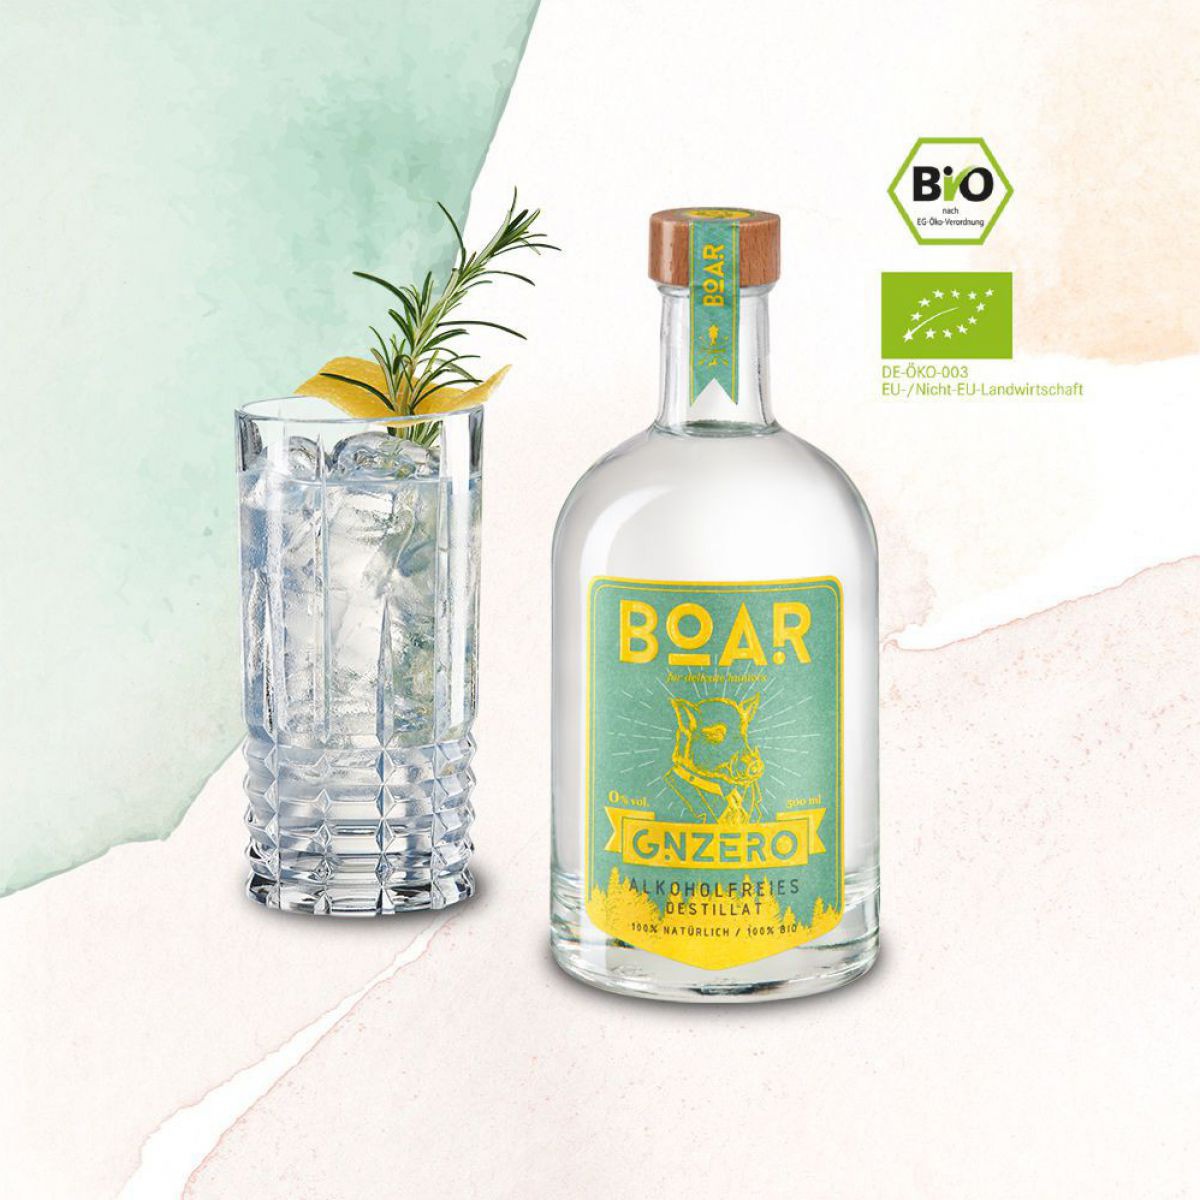 Die Flasche des BOAR GNZERO ist in türkis und gelb gehalten, daneben ein gefülltes Glas mit Eis, Rosmarin und Zitronenzeste.